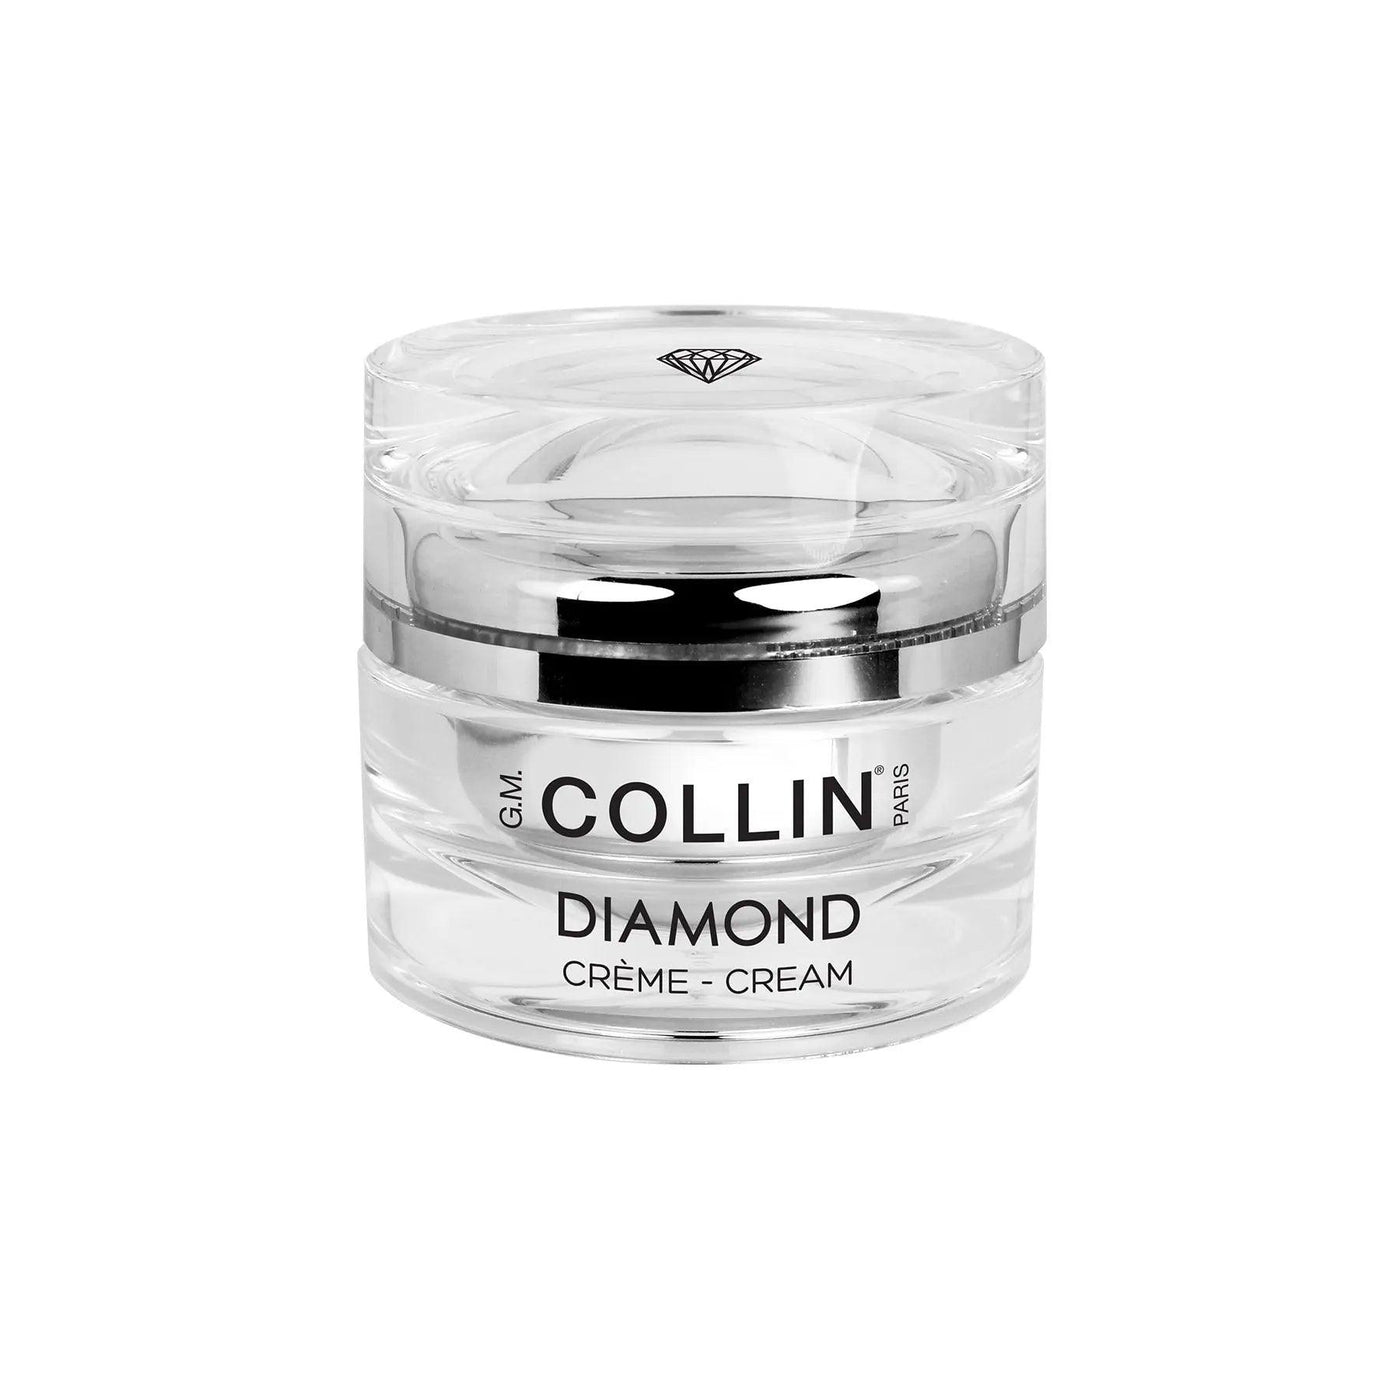 DIAMOND CREAM G.M Collin Boutique Deauville